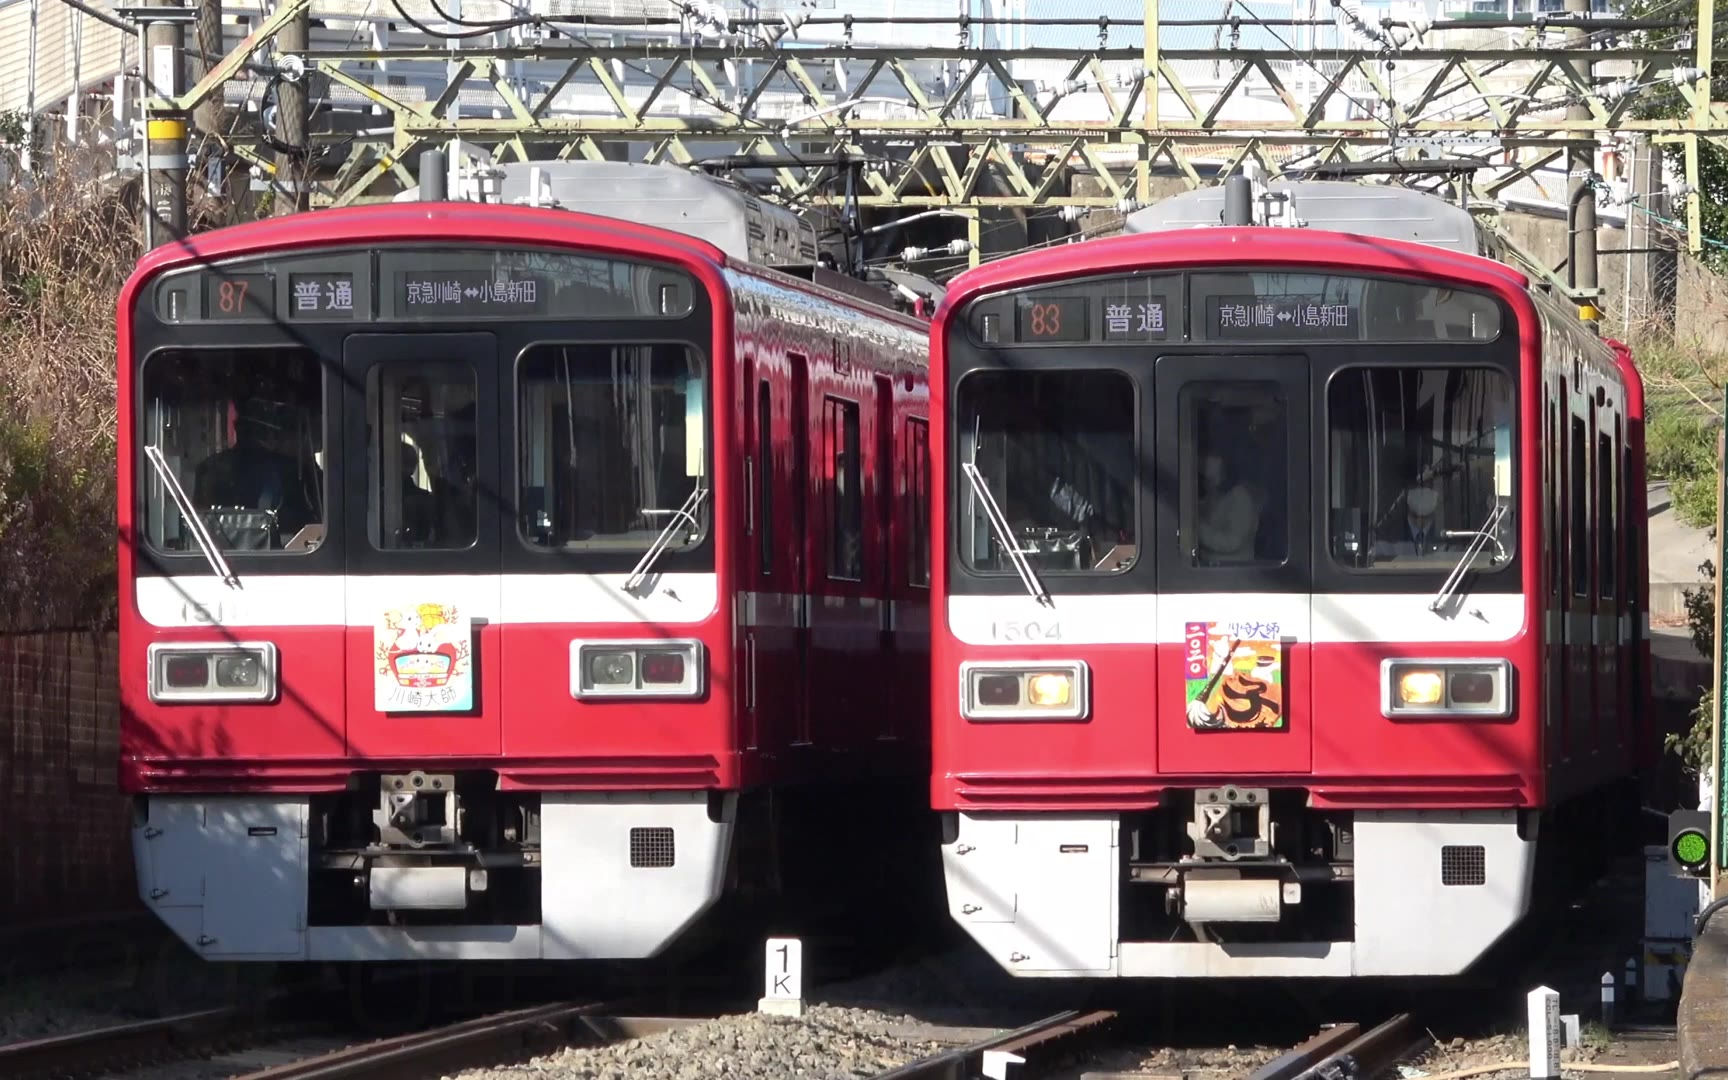 【世界铁路】【日本铁道】挂了新年特别logo的京急大师线1500型列车